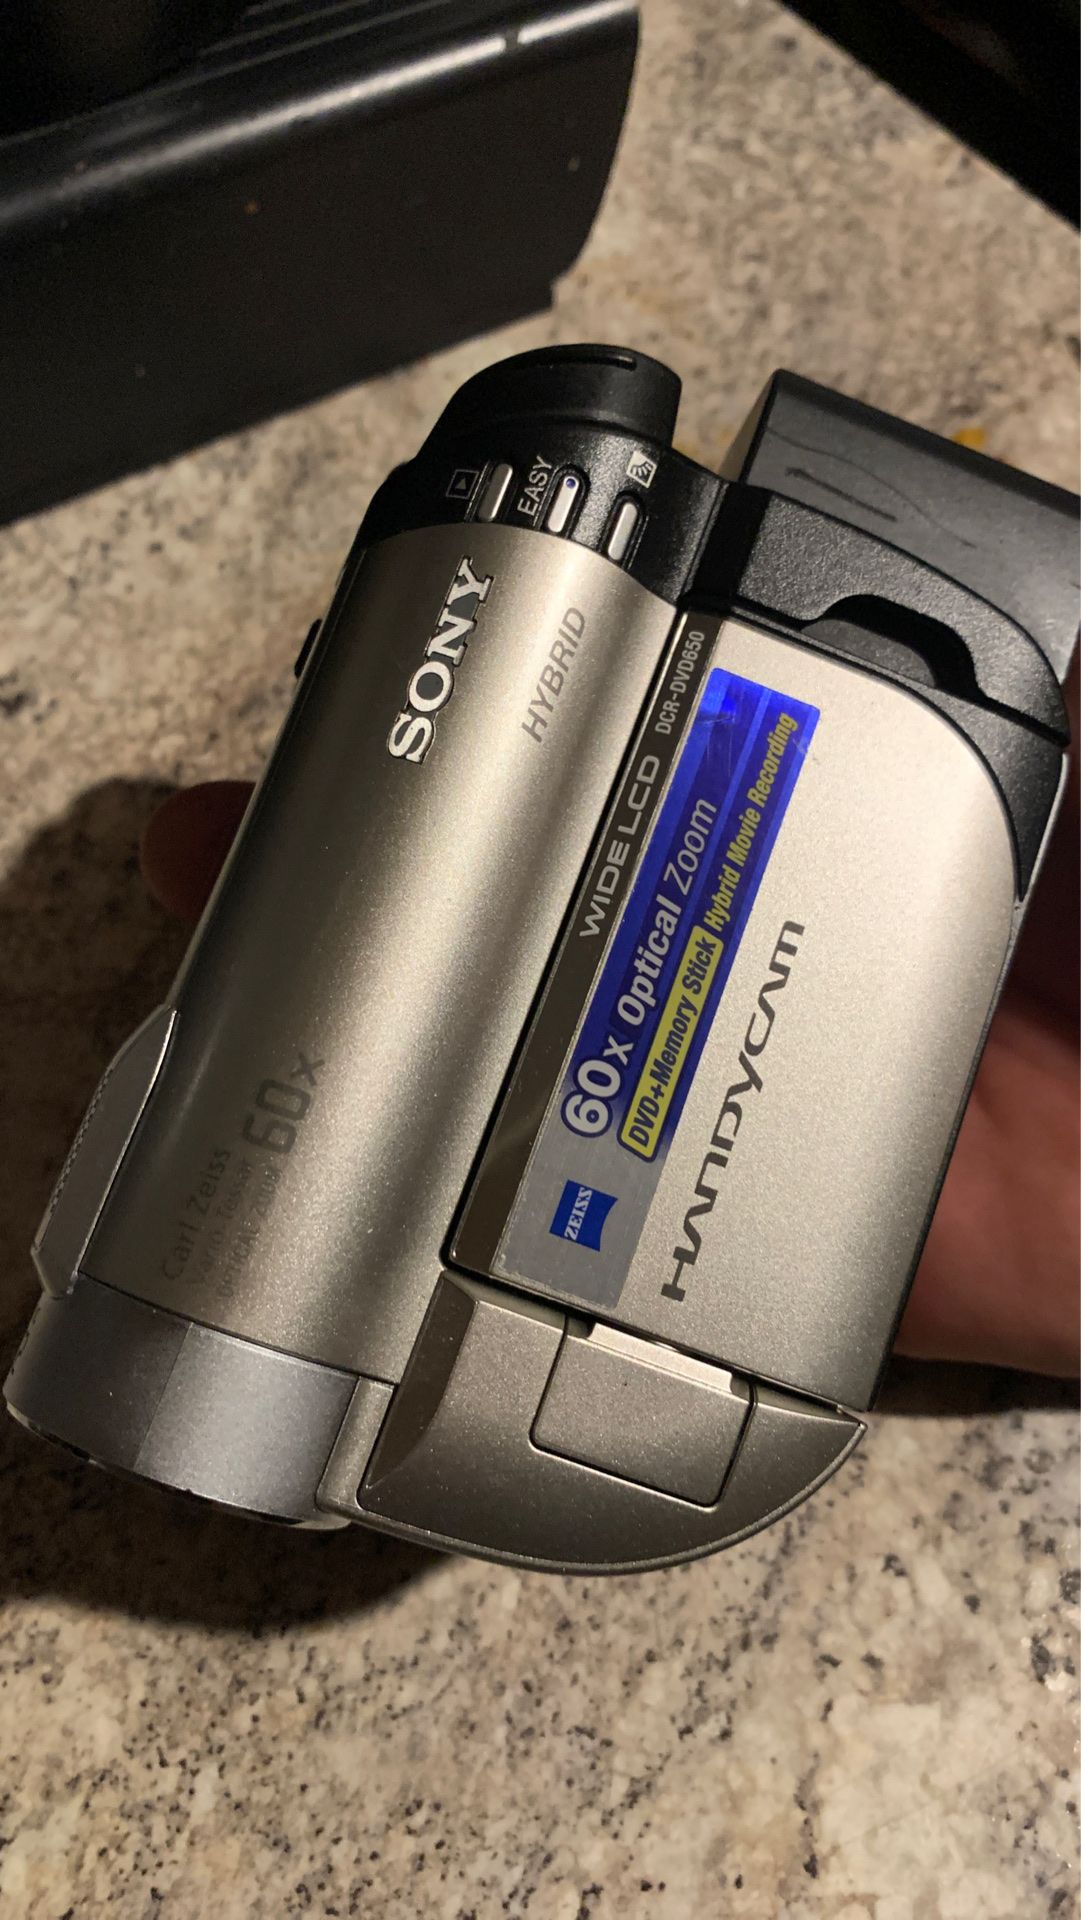 Sony DCR-DVD650 Handycam®